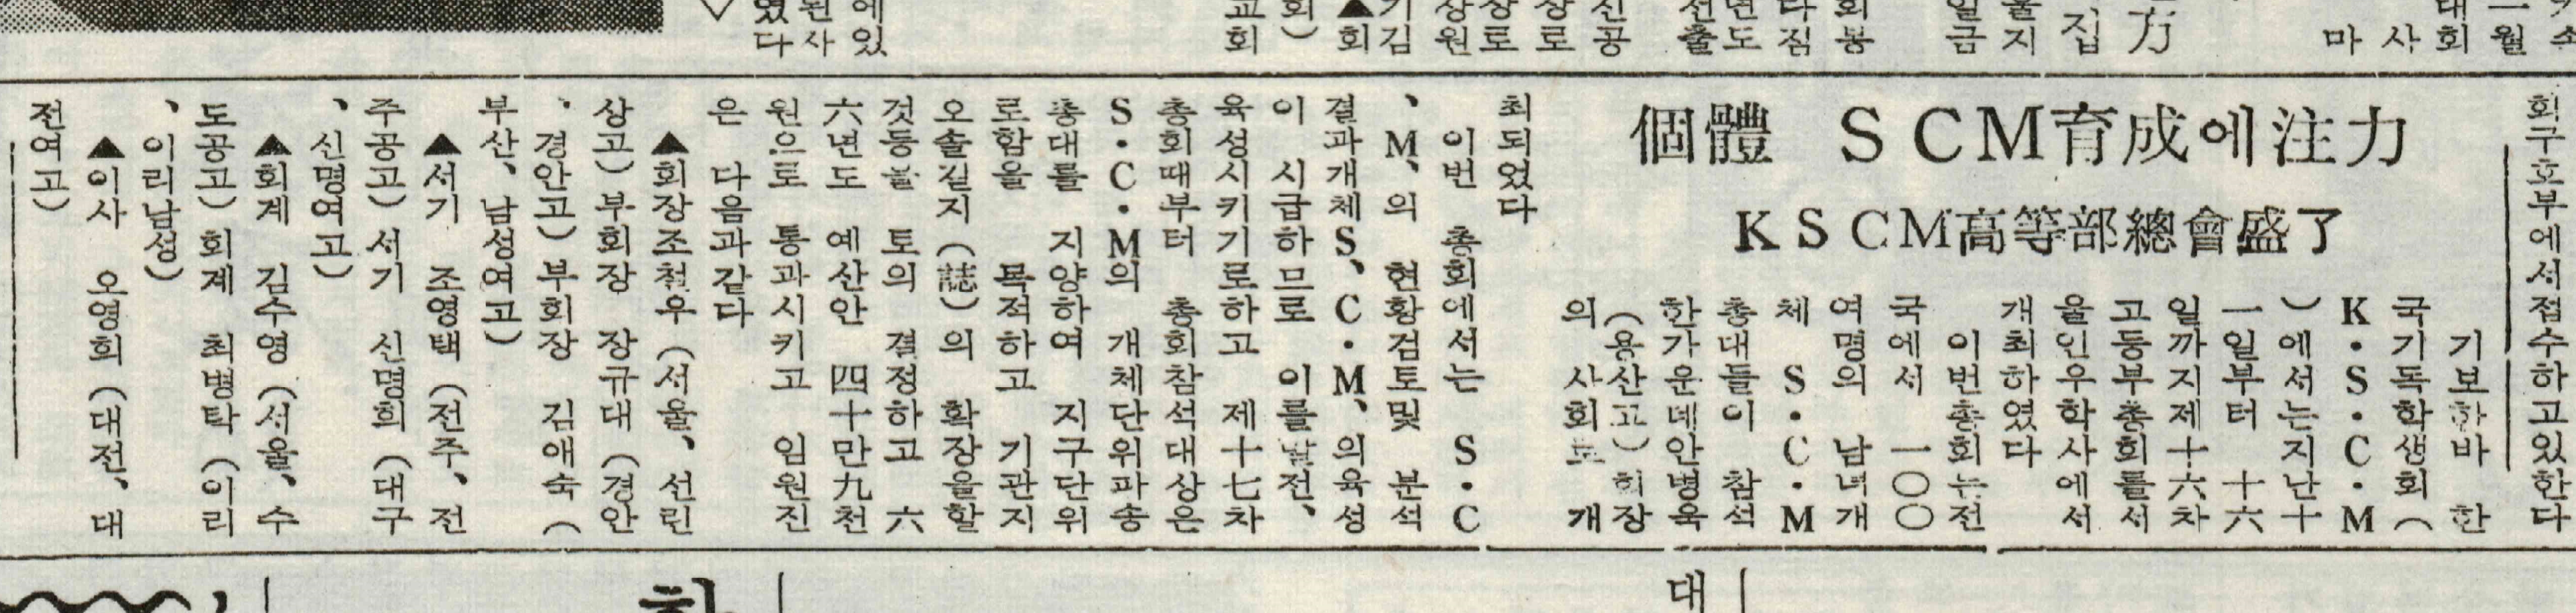 1966-1-11-KSCM고등부총회.JPG